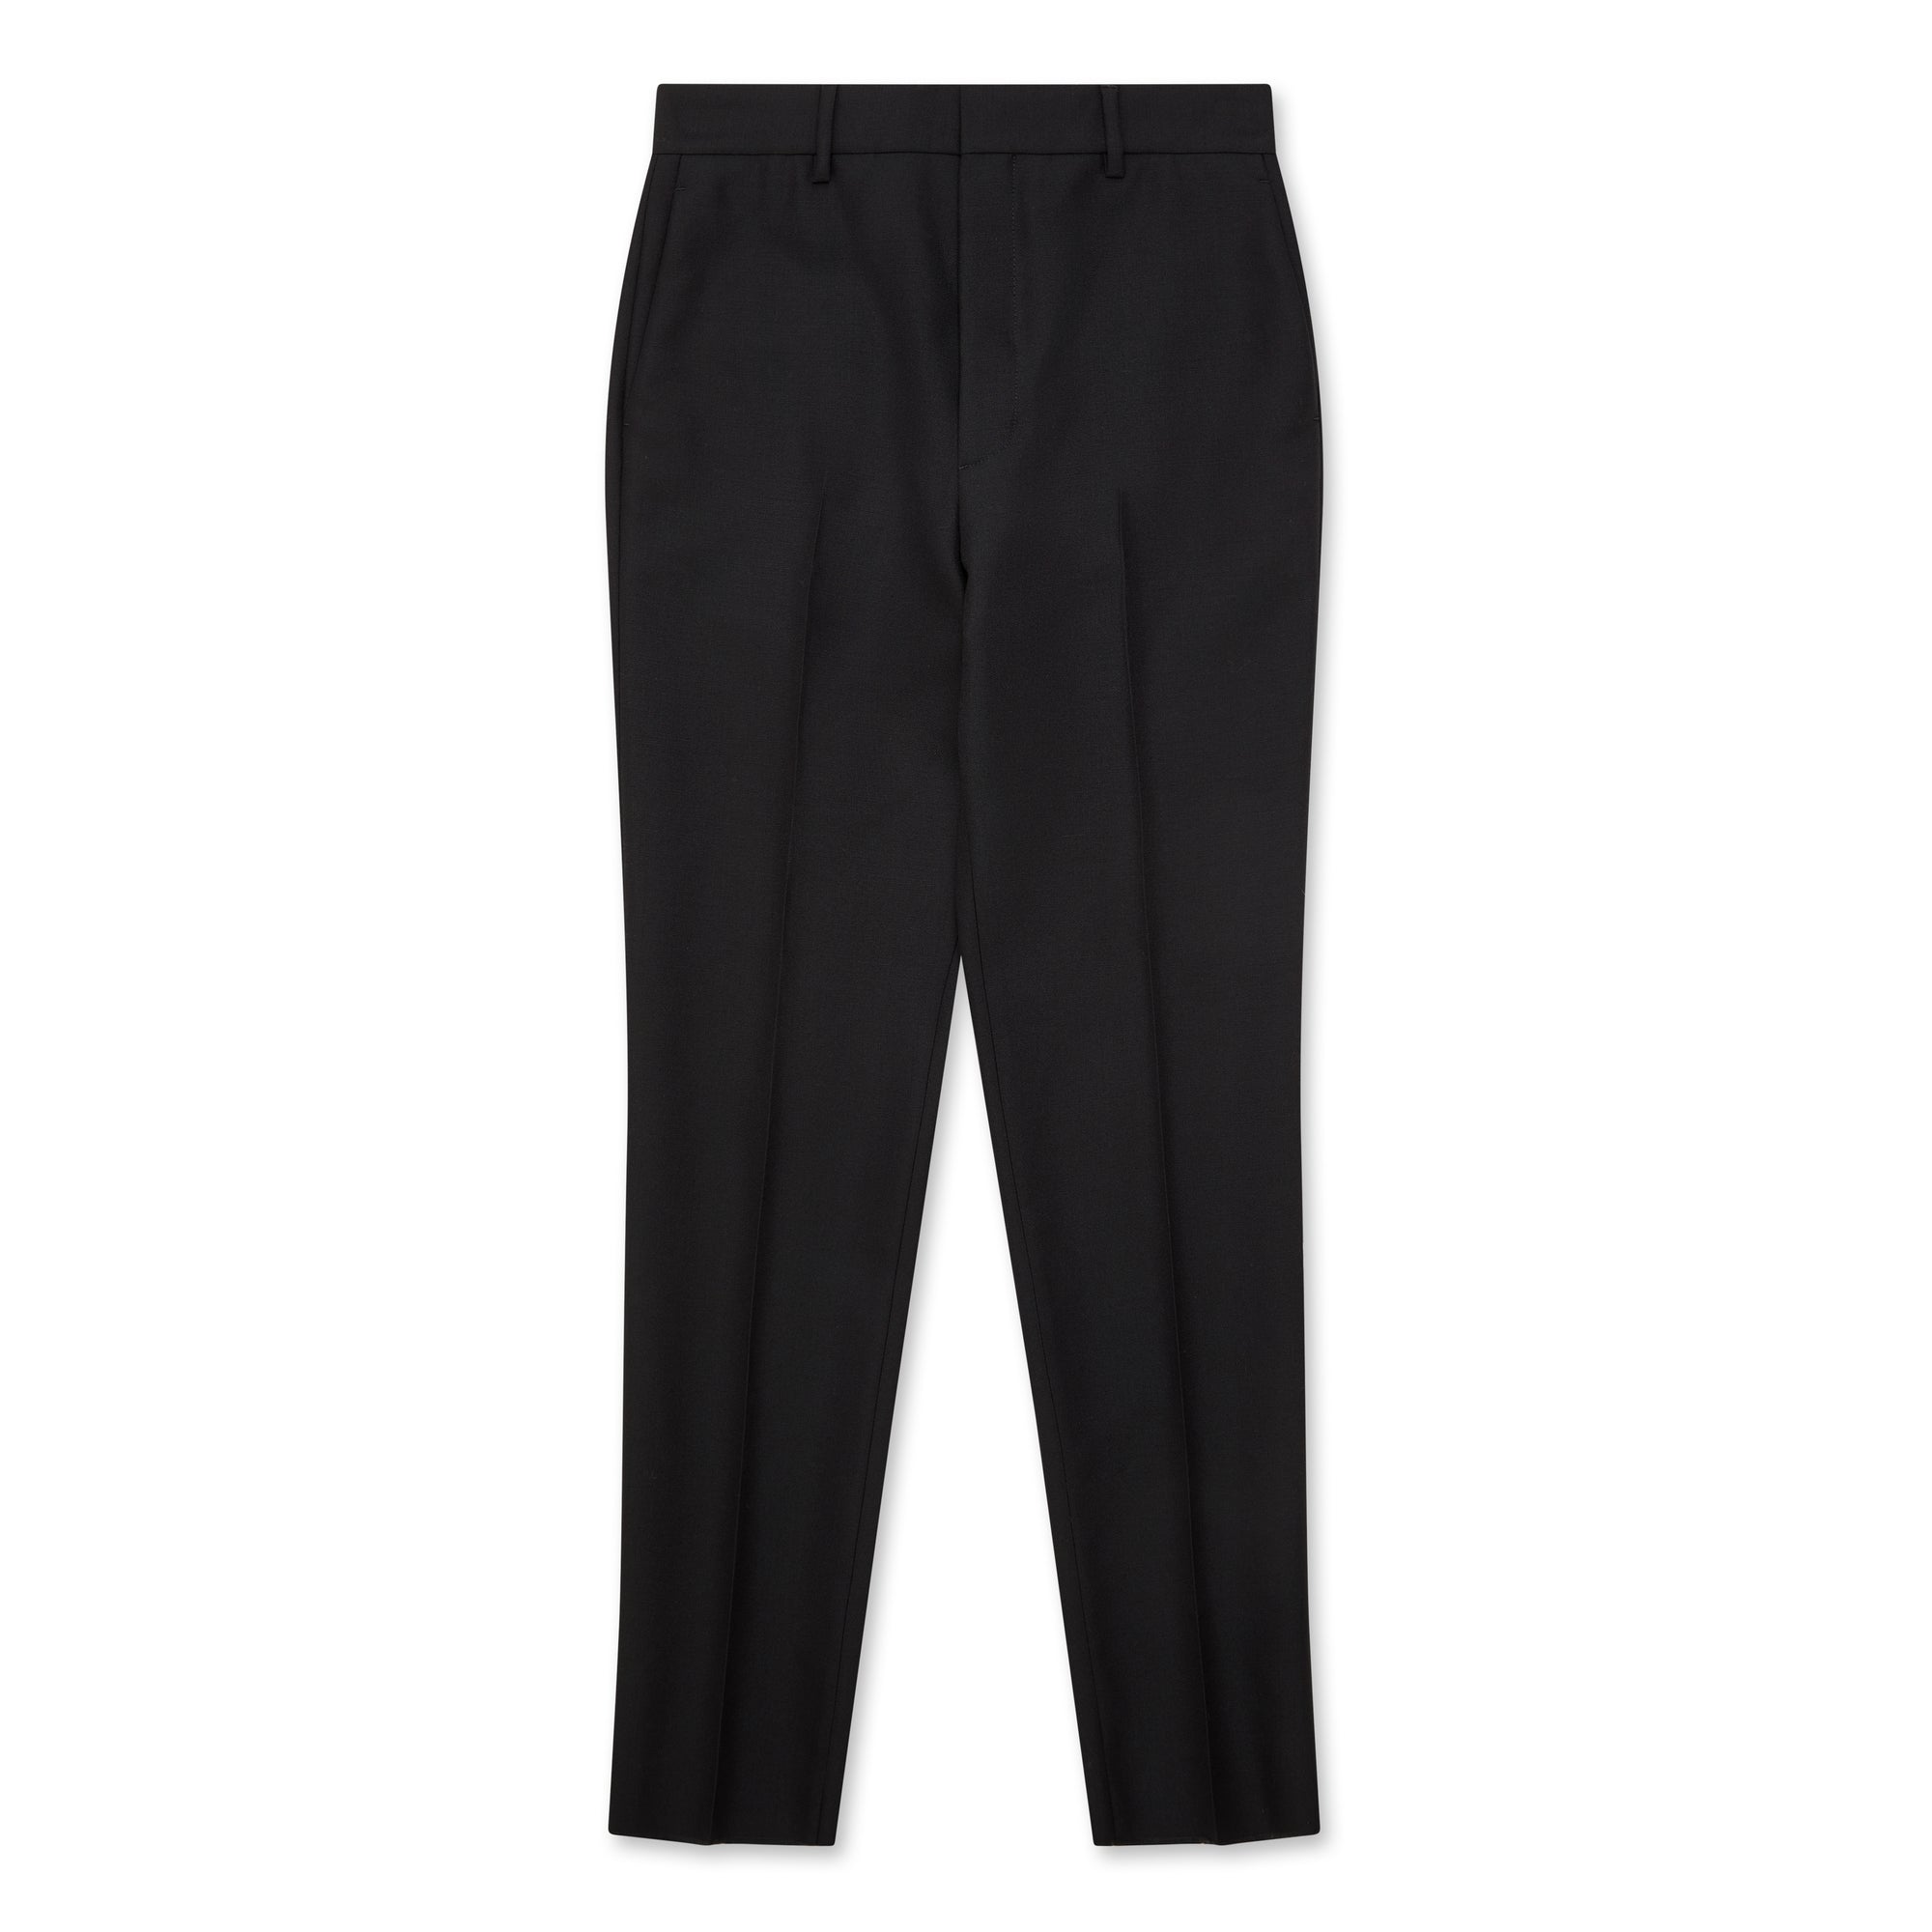 Prada - Men’s Wool and Mohair Pants - (Black) view 1